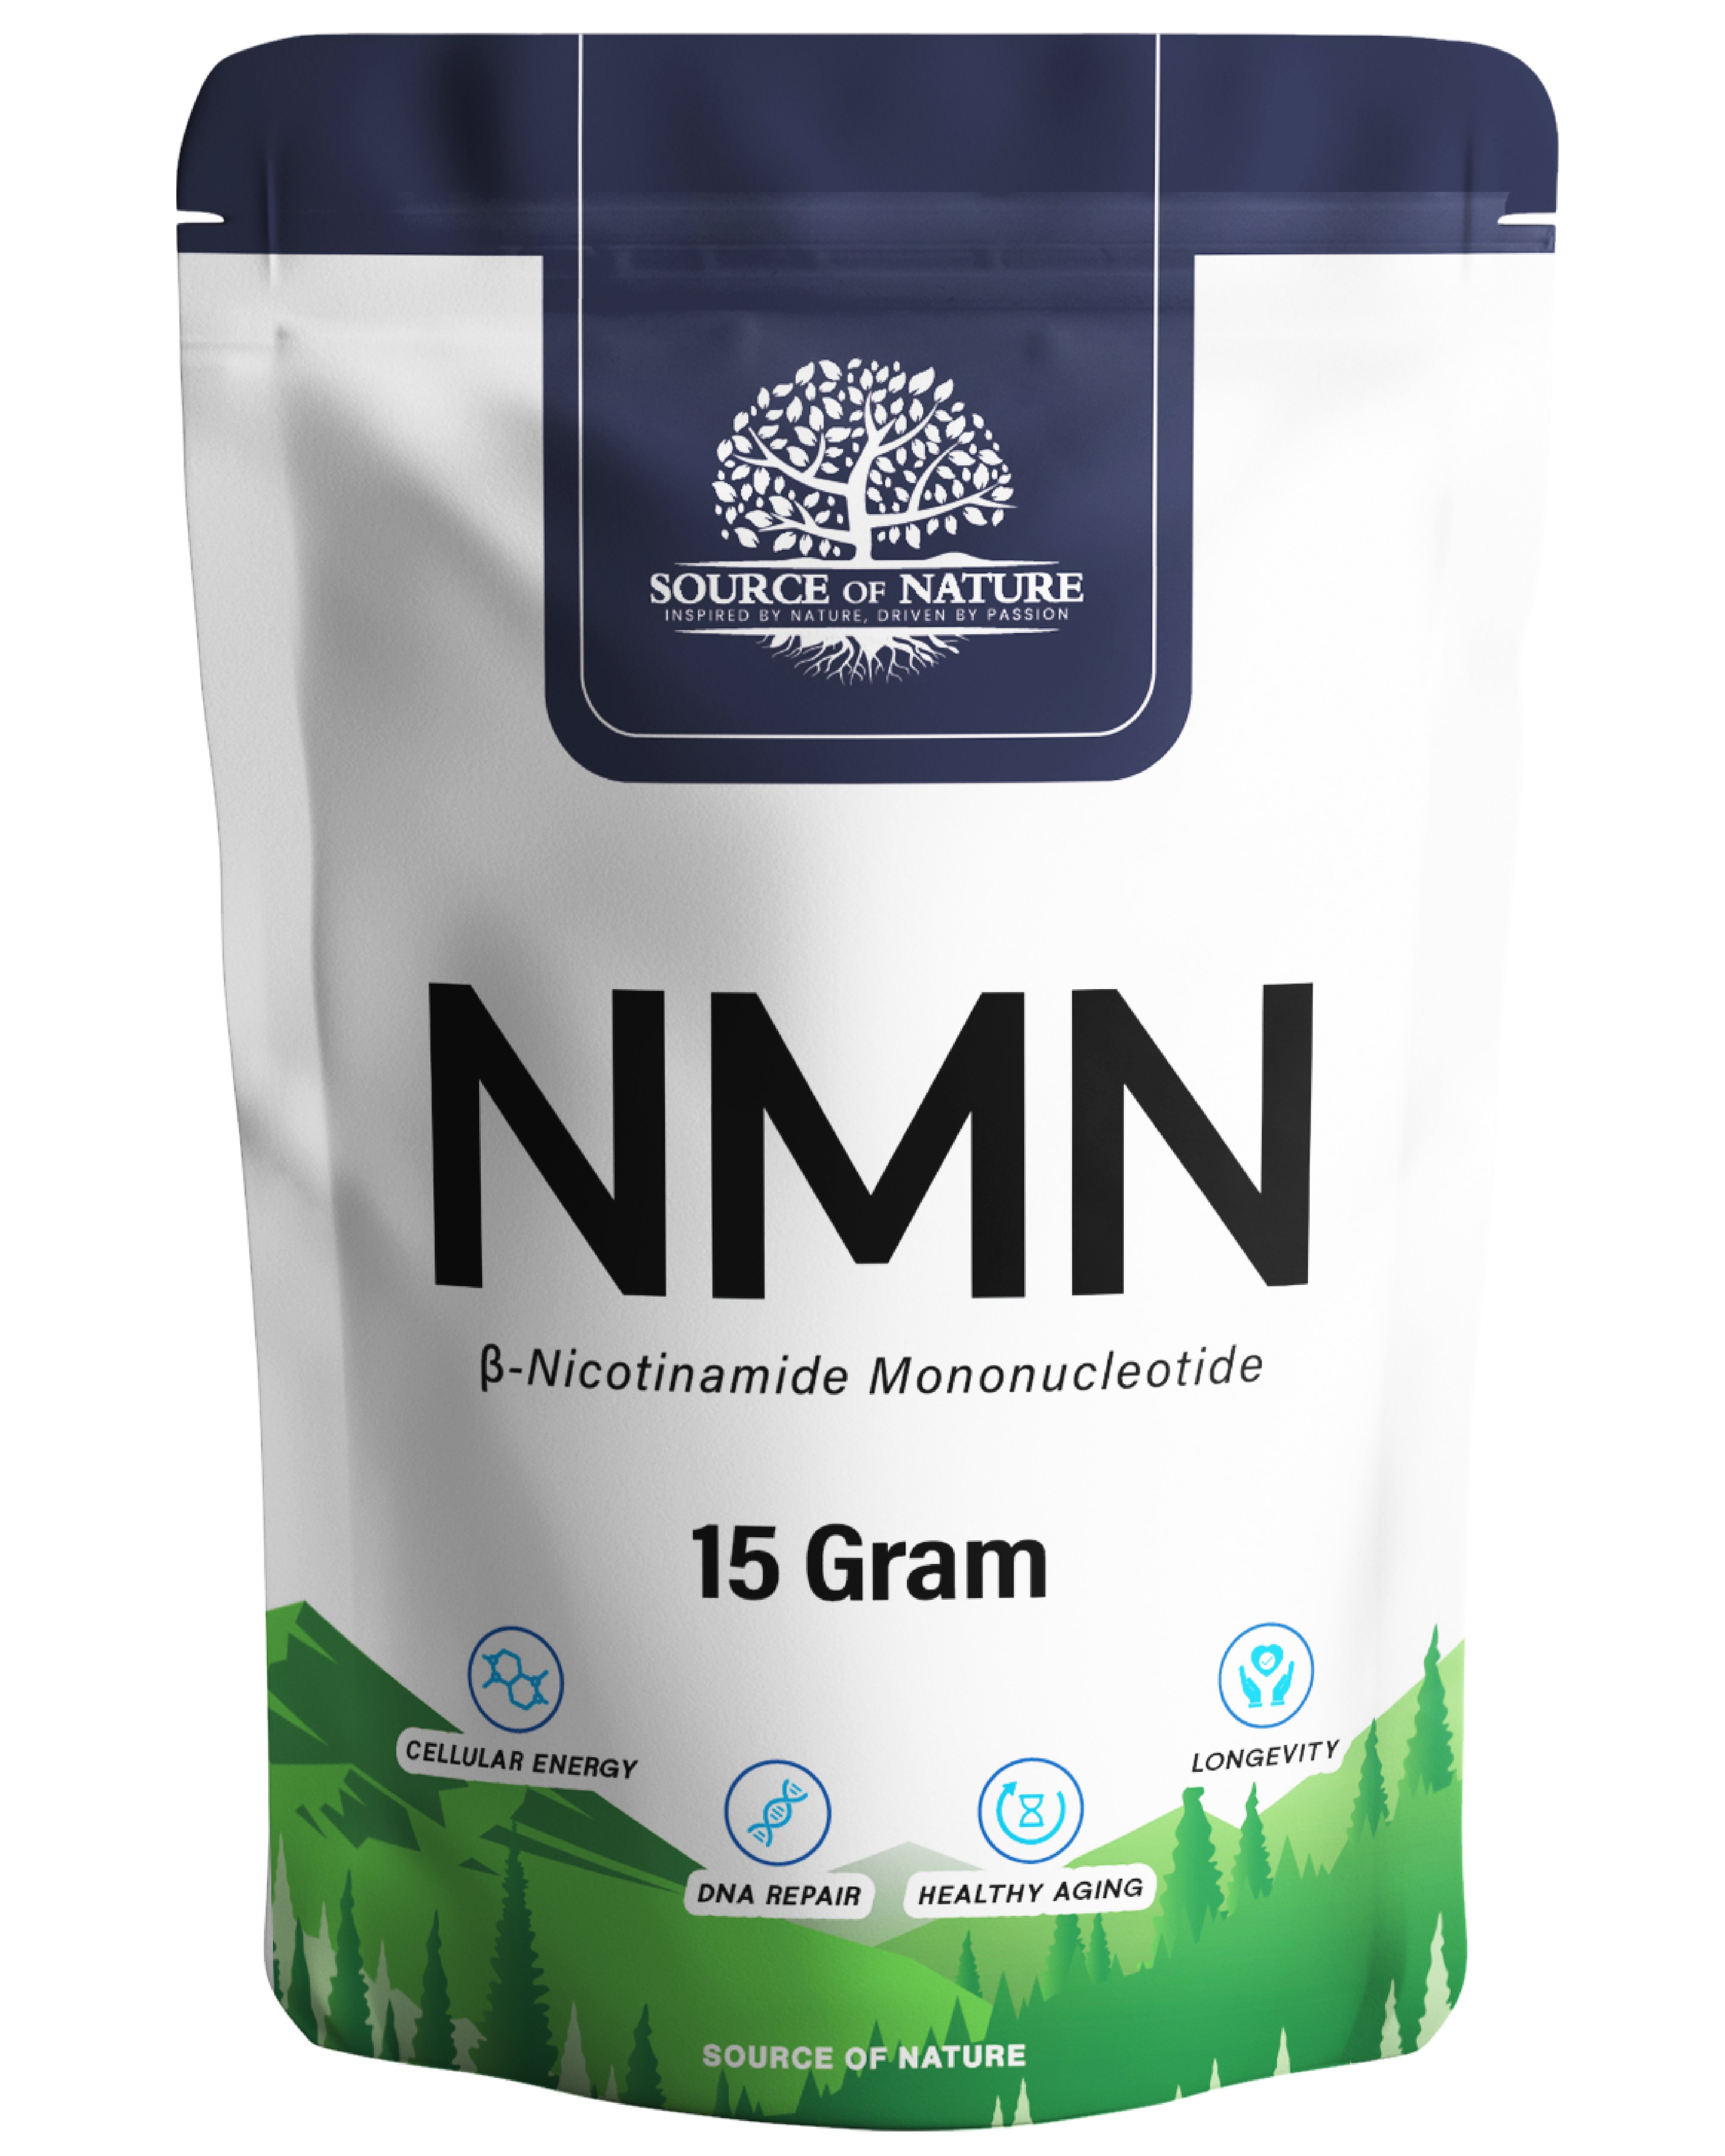 β-Nicotinamide-Mononucleotide 15 Gram (Uthever® 2. Gen NMN)